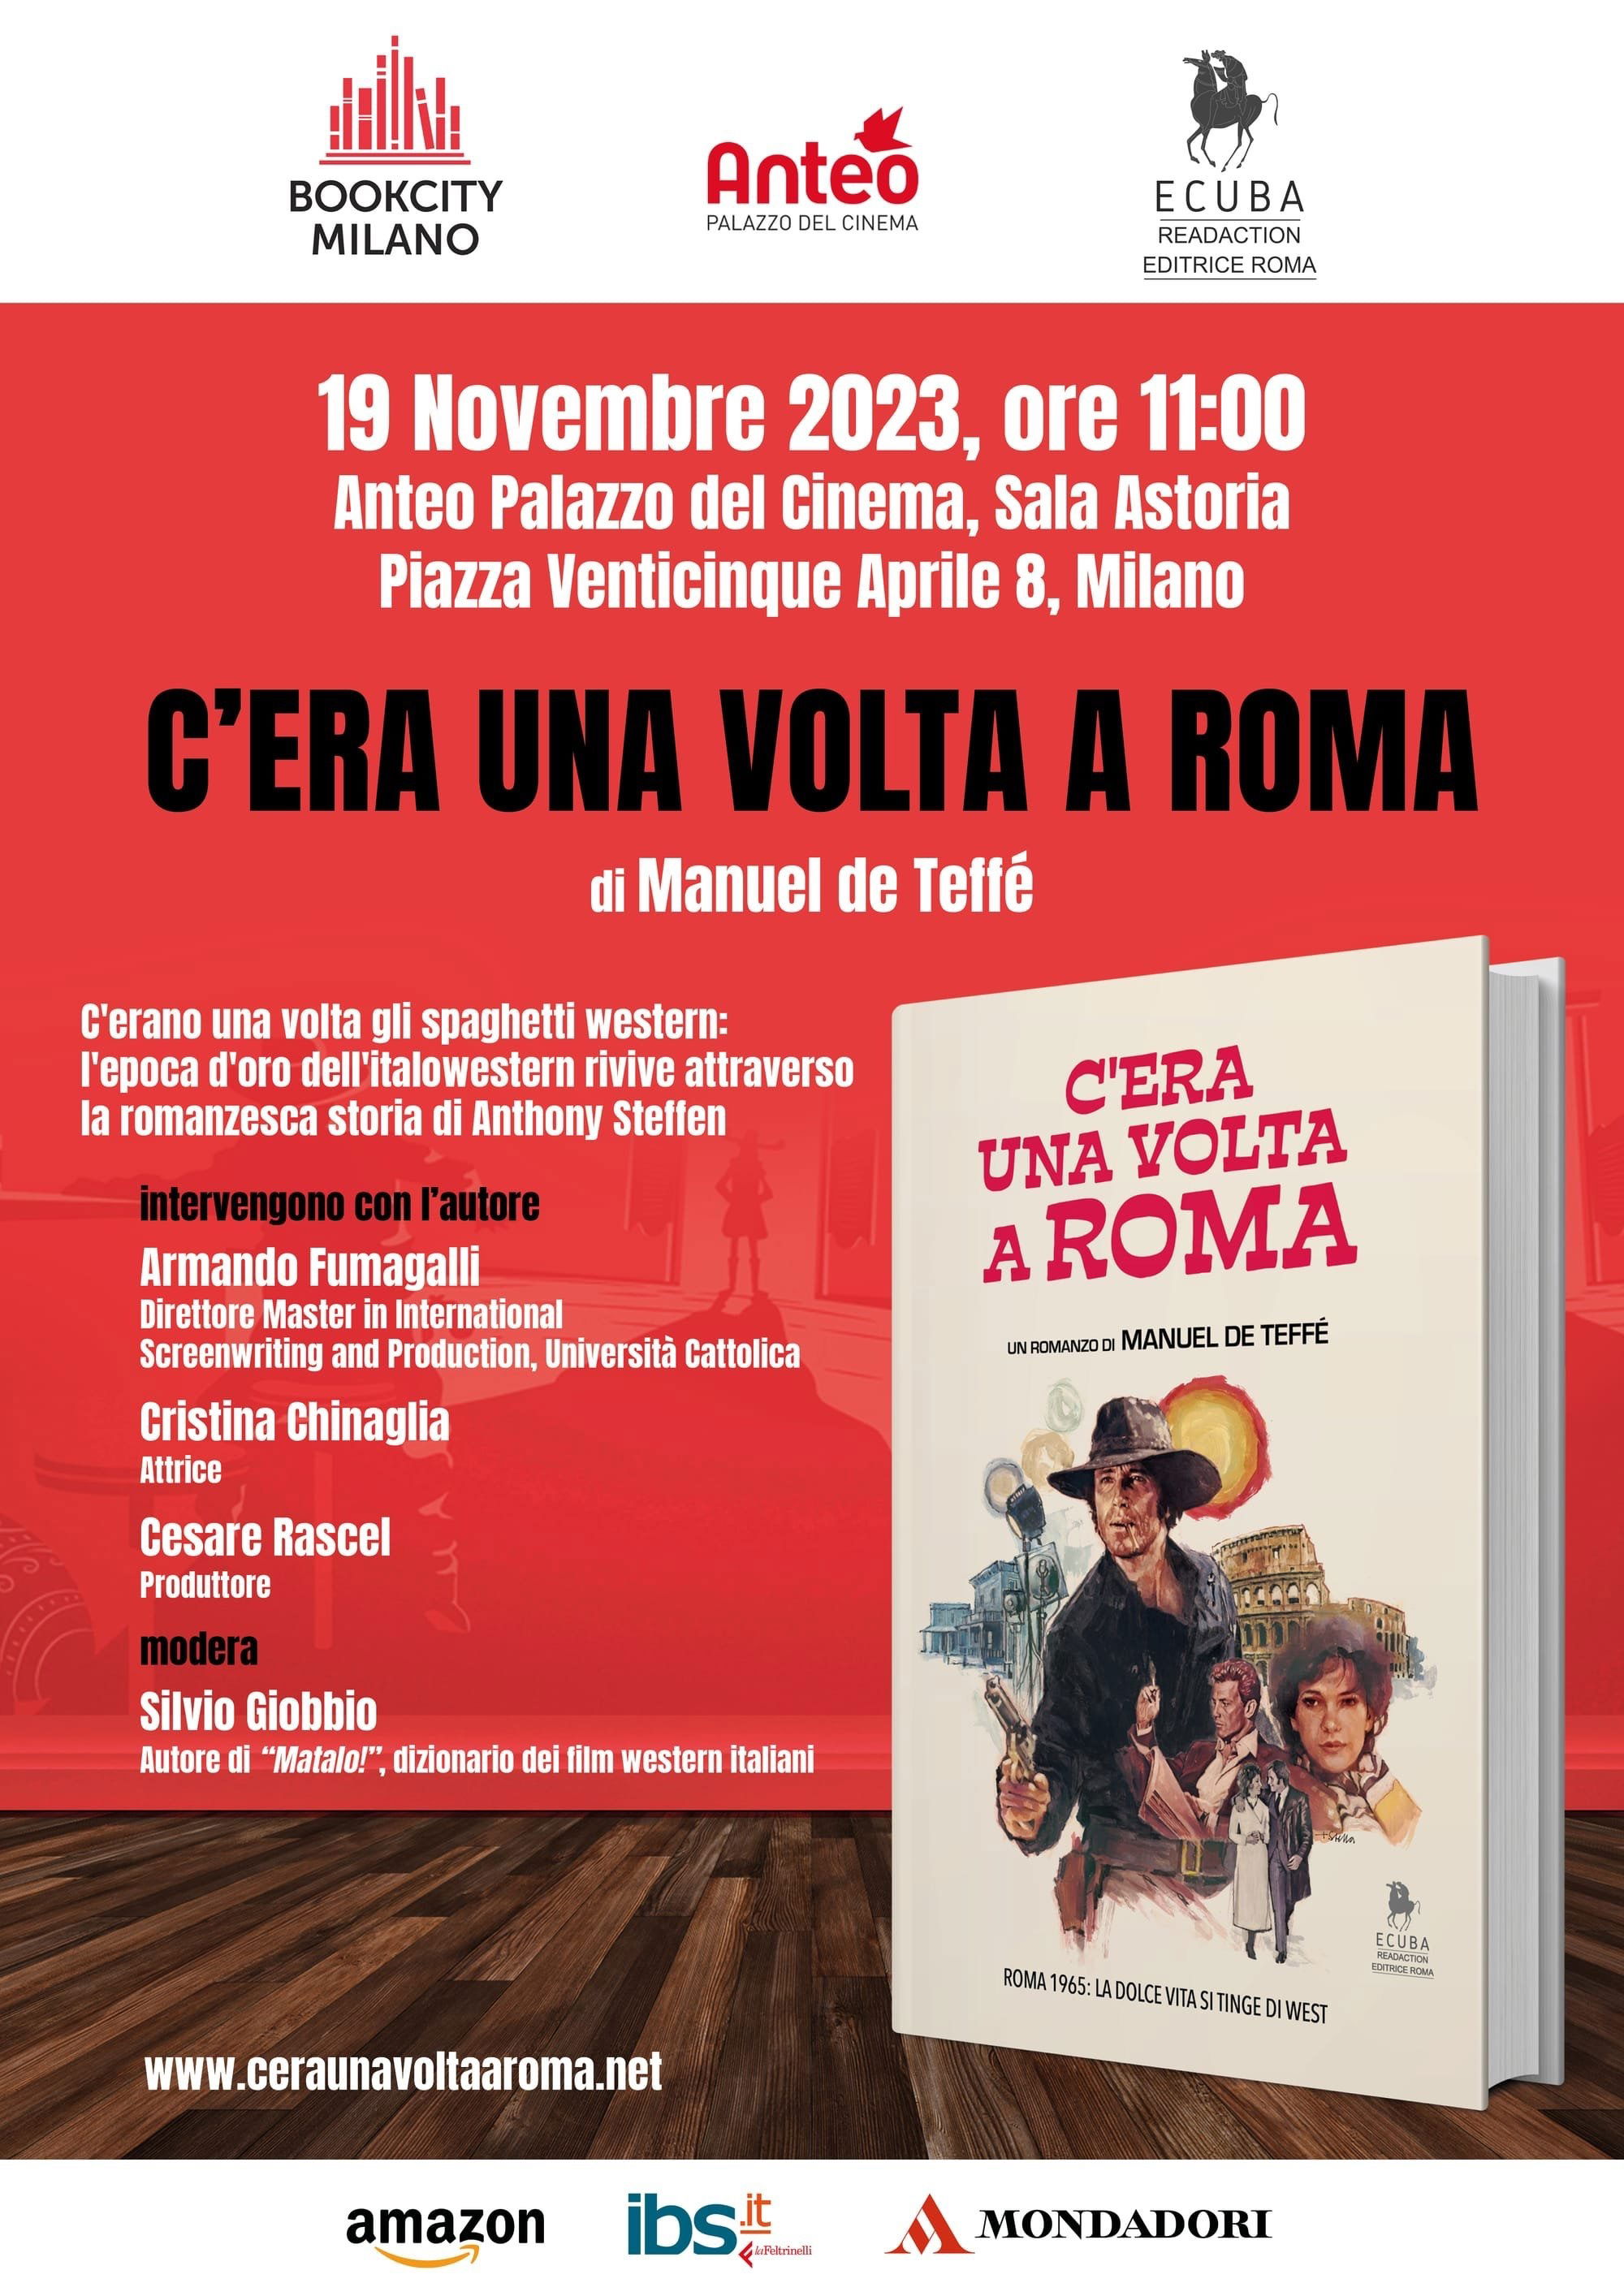 BOOK CITY MILANO, 19 Novembre 2023, ore 11 - Anteo Palazzo del Cinema